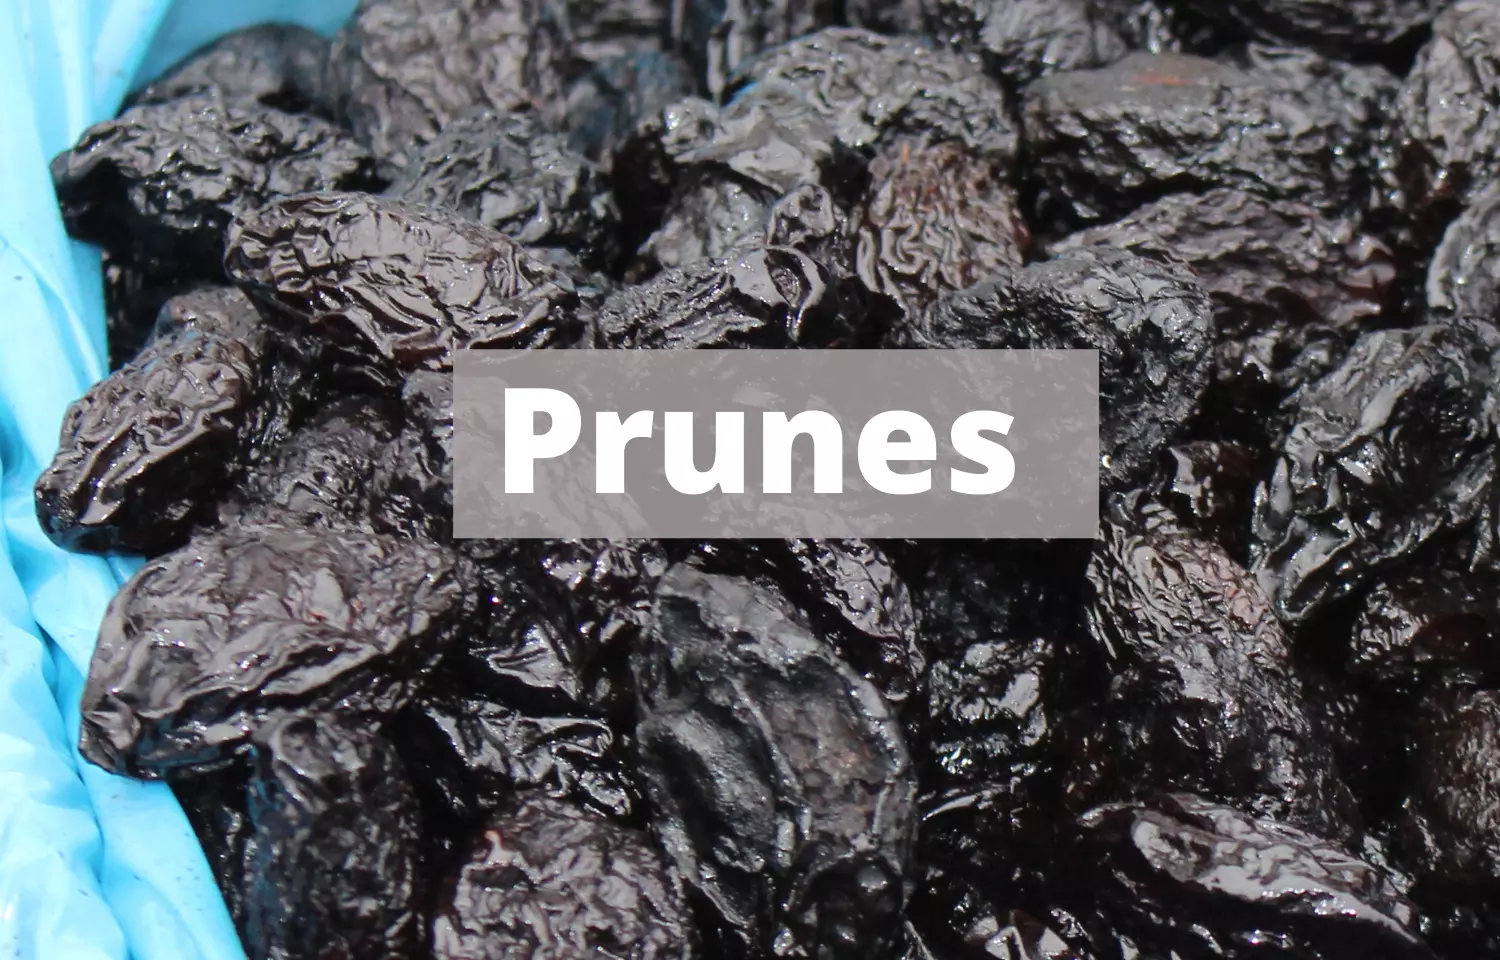 Eating prunes may help protect against bone loss in postmenopausal women